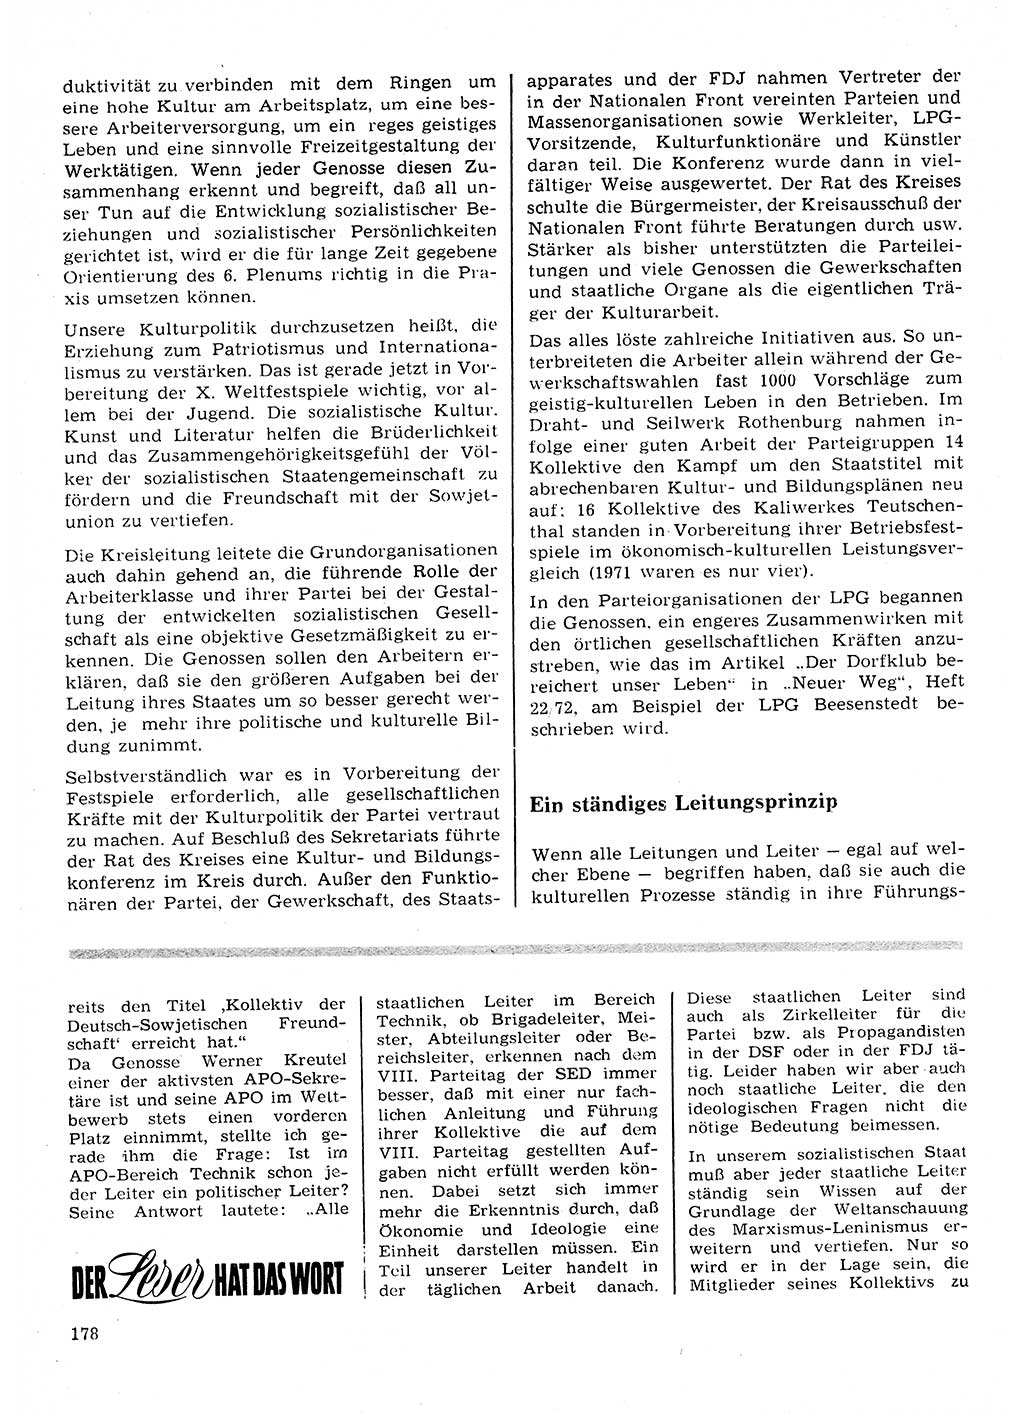 Neuer Weg (NW), Organ des Zentralkomitees (ZK) der SED (Sozialistische Einheitspartei Deutschlands) für Fragen des Parteilebens, 28. Jahrgang [Deutsche Demokratische Republik (DDR)] 1973, Seite 178 (NW ZK SED DDR 1973, S. 178)